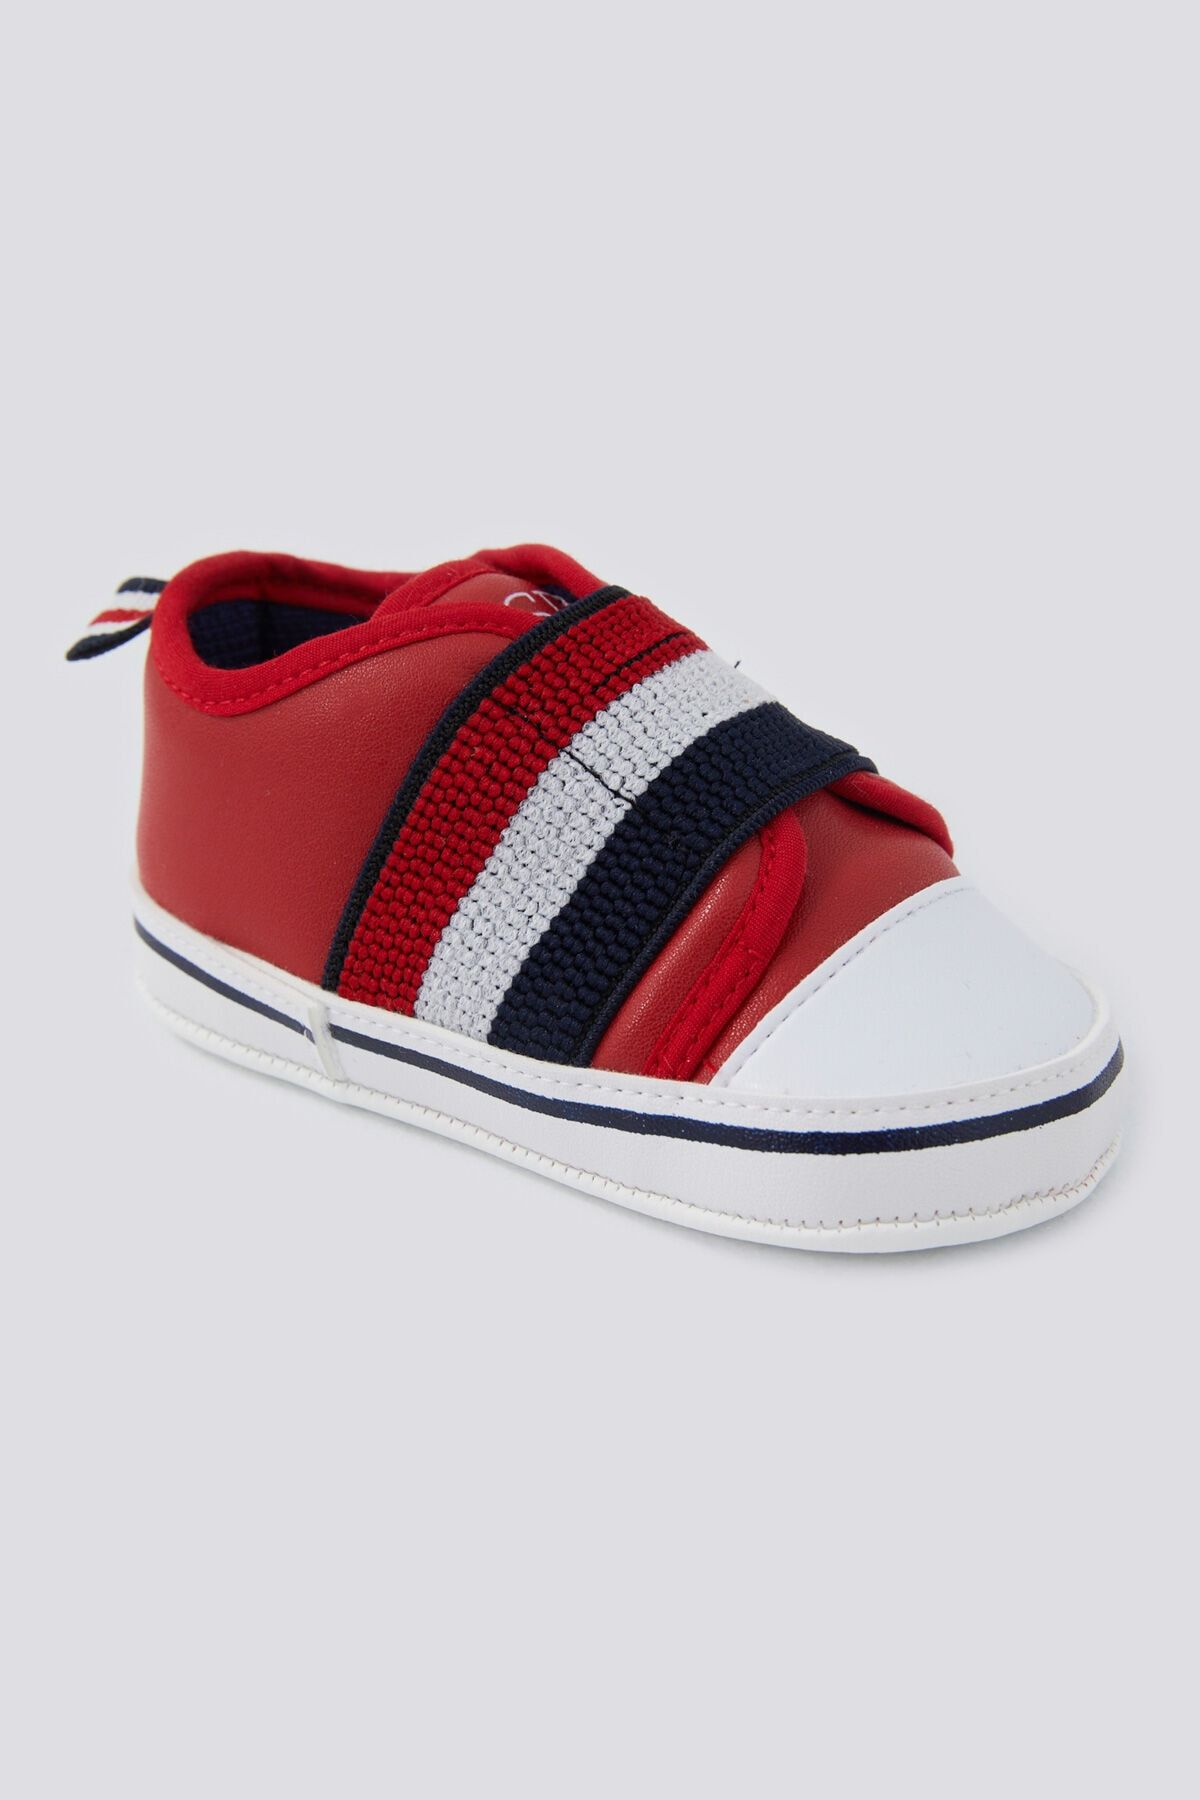 U.S. Polo Assn. Soft Texture Kırmızı Bebek Ayakkabı